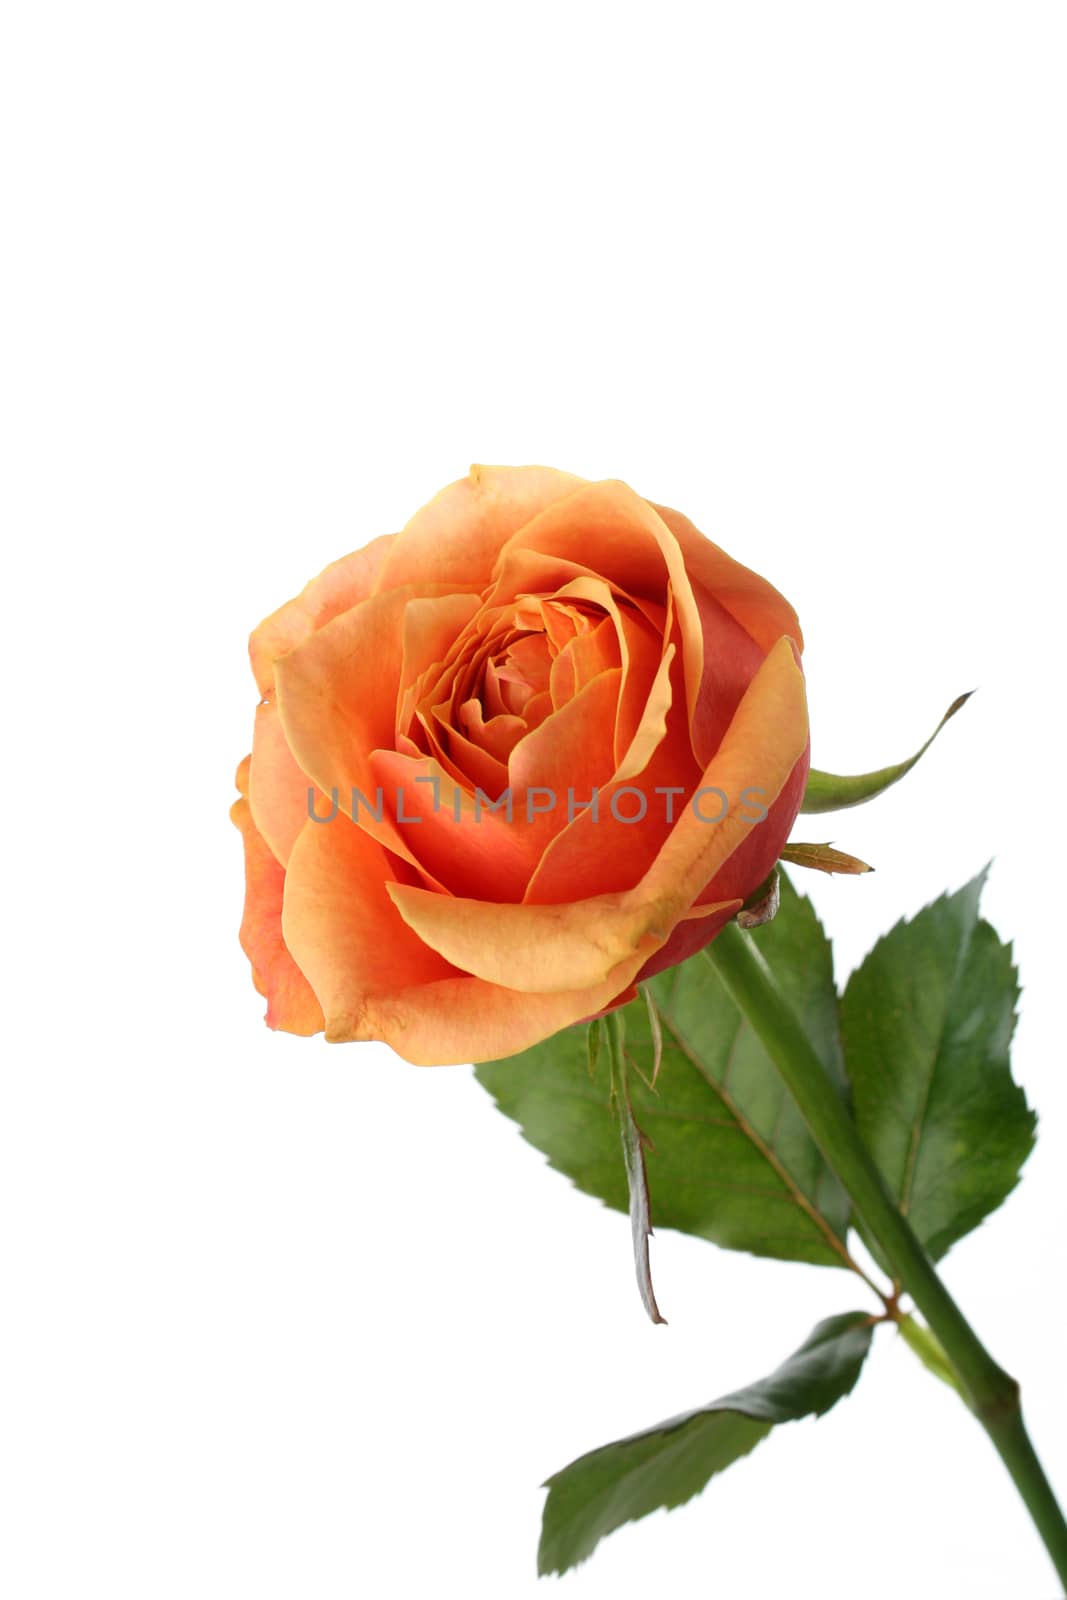 Orange rose isolated on white